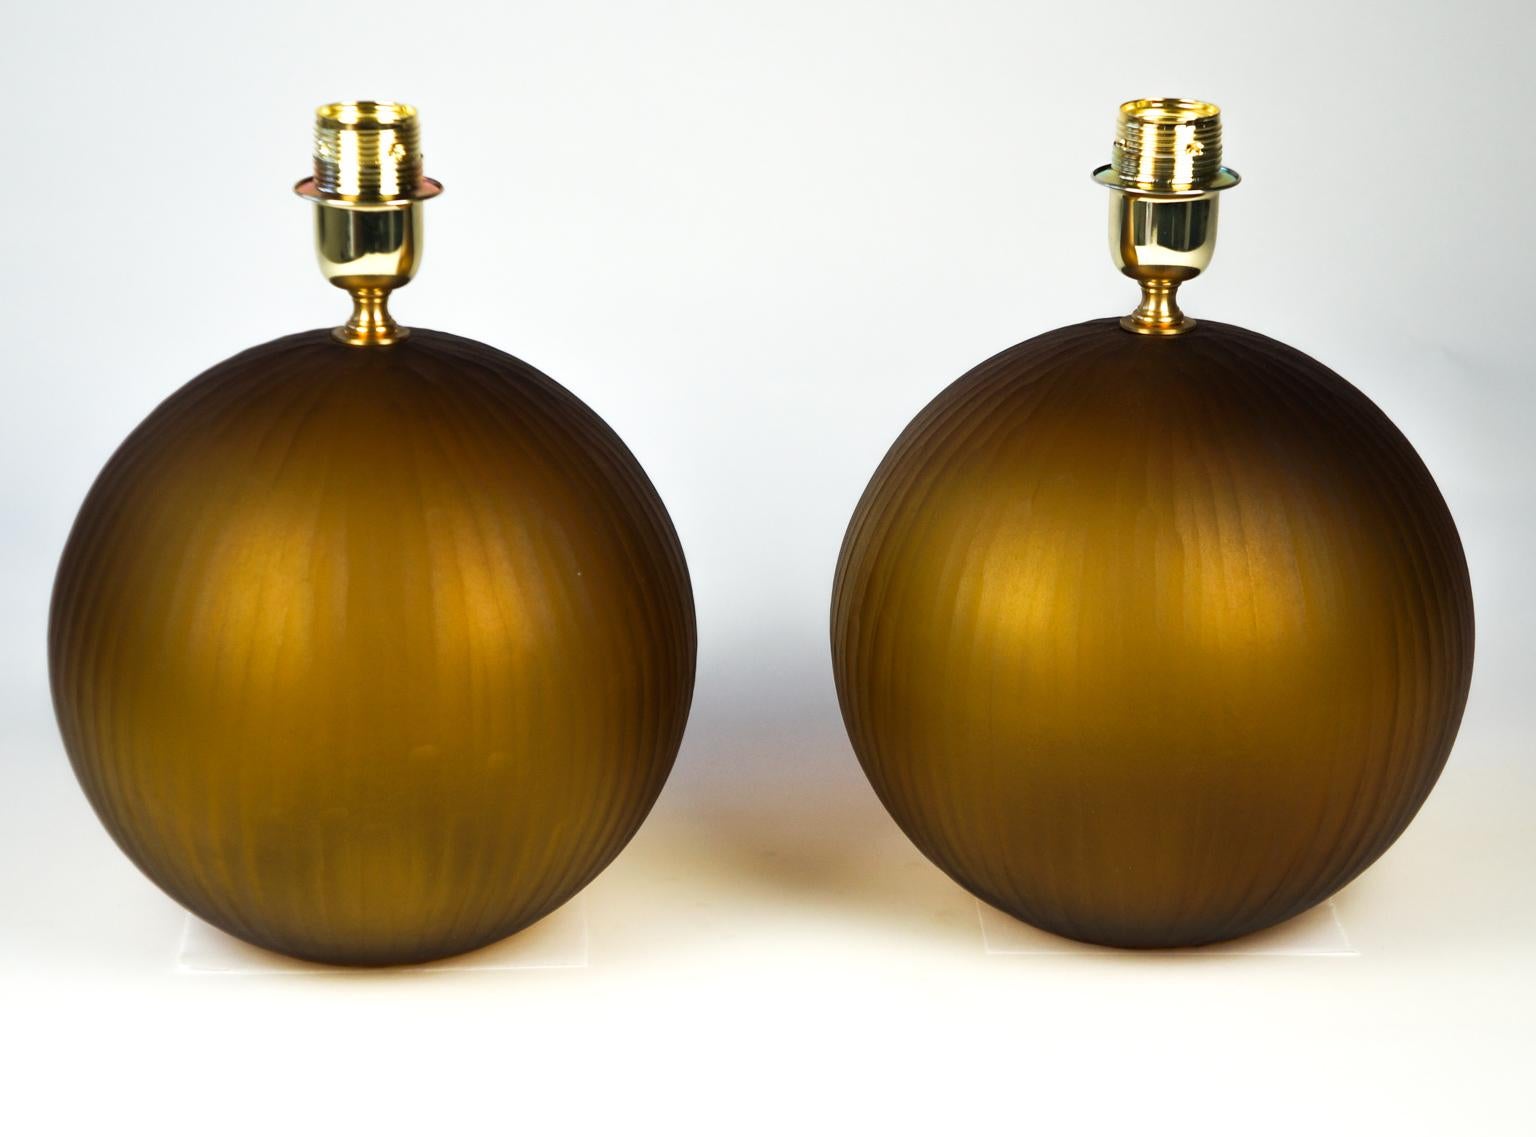 Es ist eine sehr einfache Lampe, die nur aus einer Kugel besteht. Die 1998 von dem Glasmeister Alberto Donà entworfene Leuchte ist, wie gesagt, sehr einfach, sie besteht aus einer einzigen Kugel, aber nicht deshalb hat sie keine Wirkung. Die Lampe